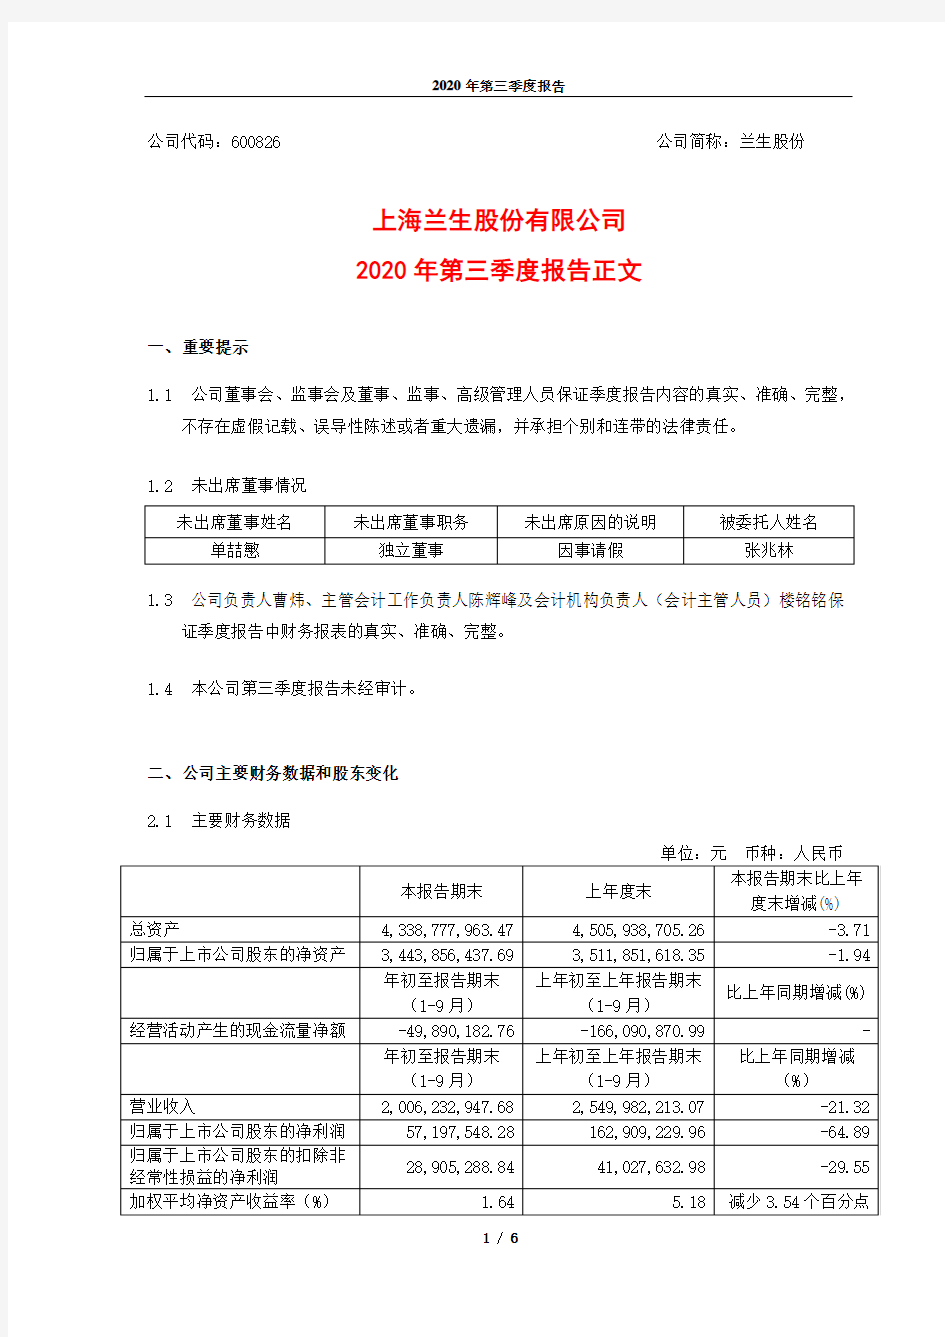 600826上海兰生股份有限公司2020年第三季度报告正文